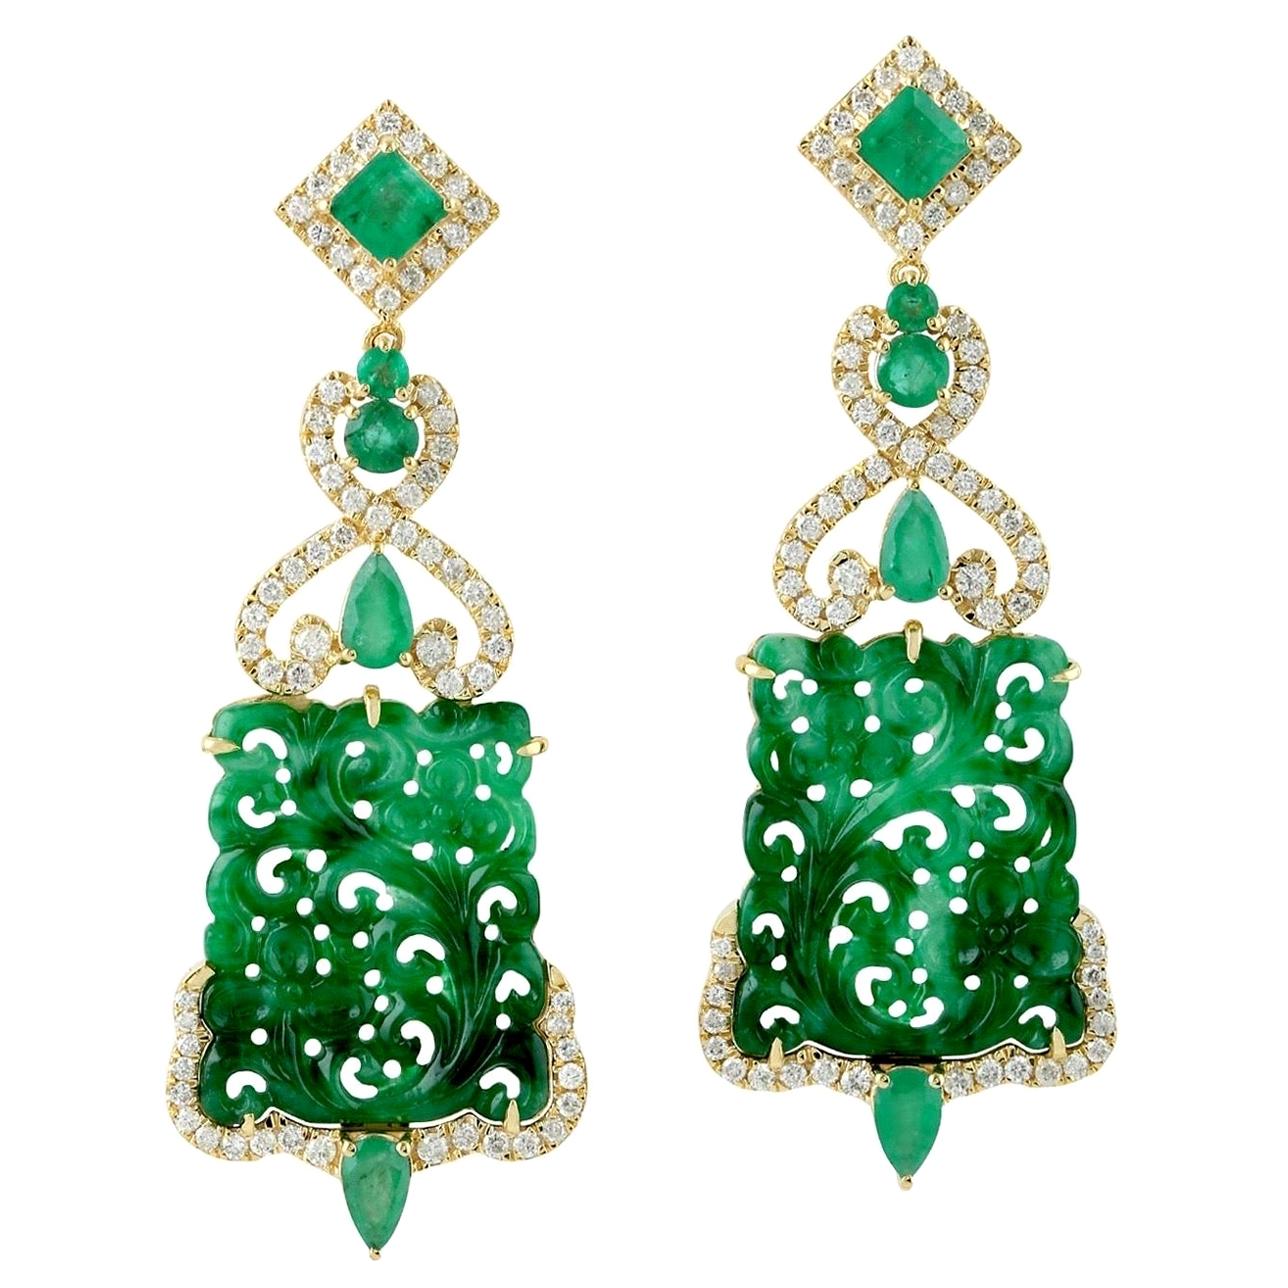 Carved jade bracelet and earrings set